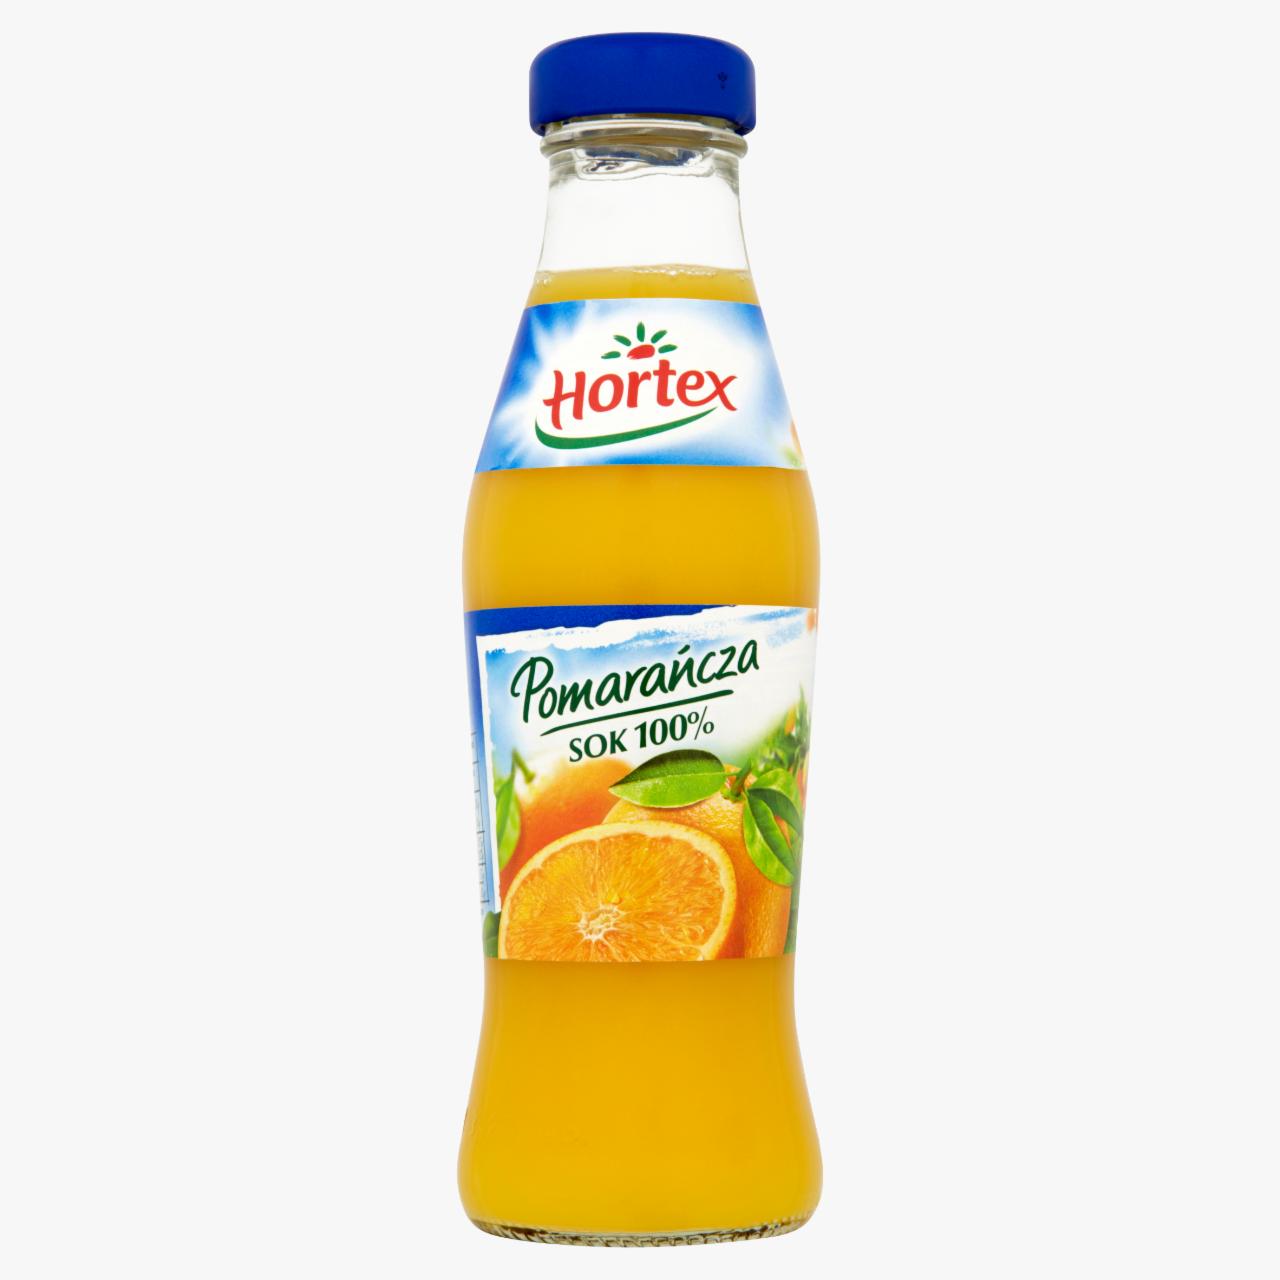 Zdjęcia - Hortex Pomarańcza Sok 100% 250 ml